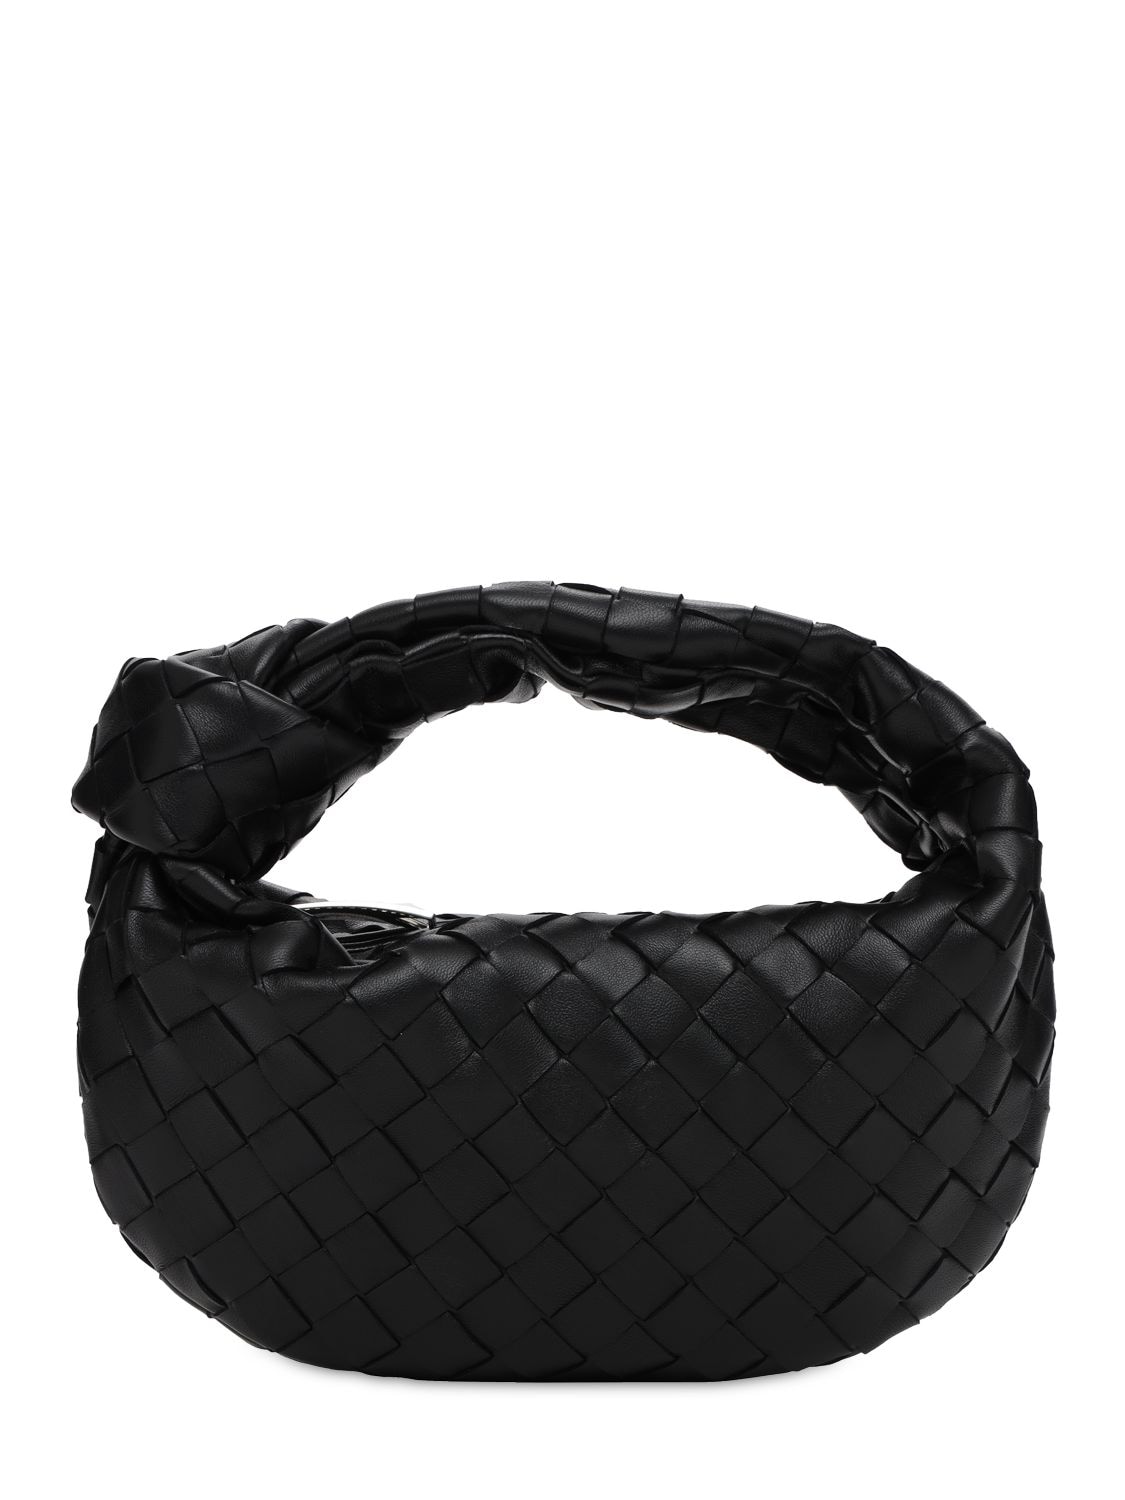 Bottega Veneta Mini Jodie Intrecciato Leather Bag In Black | ModeSens